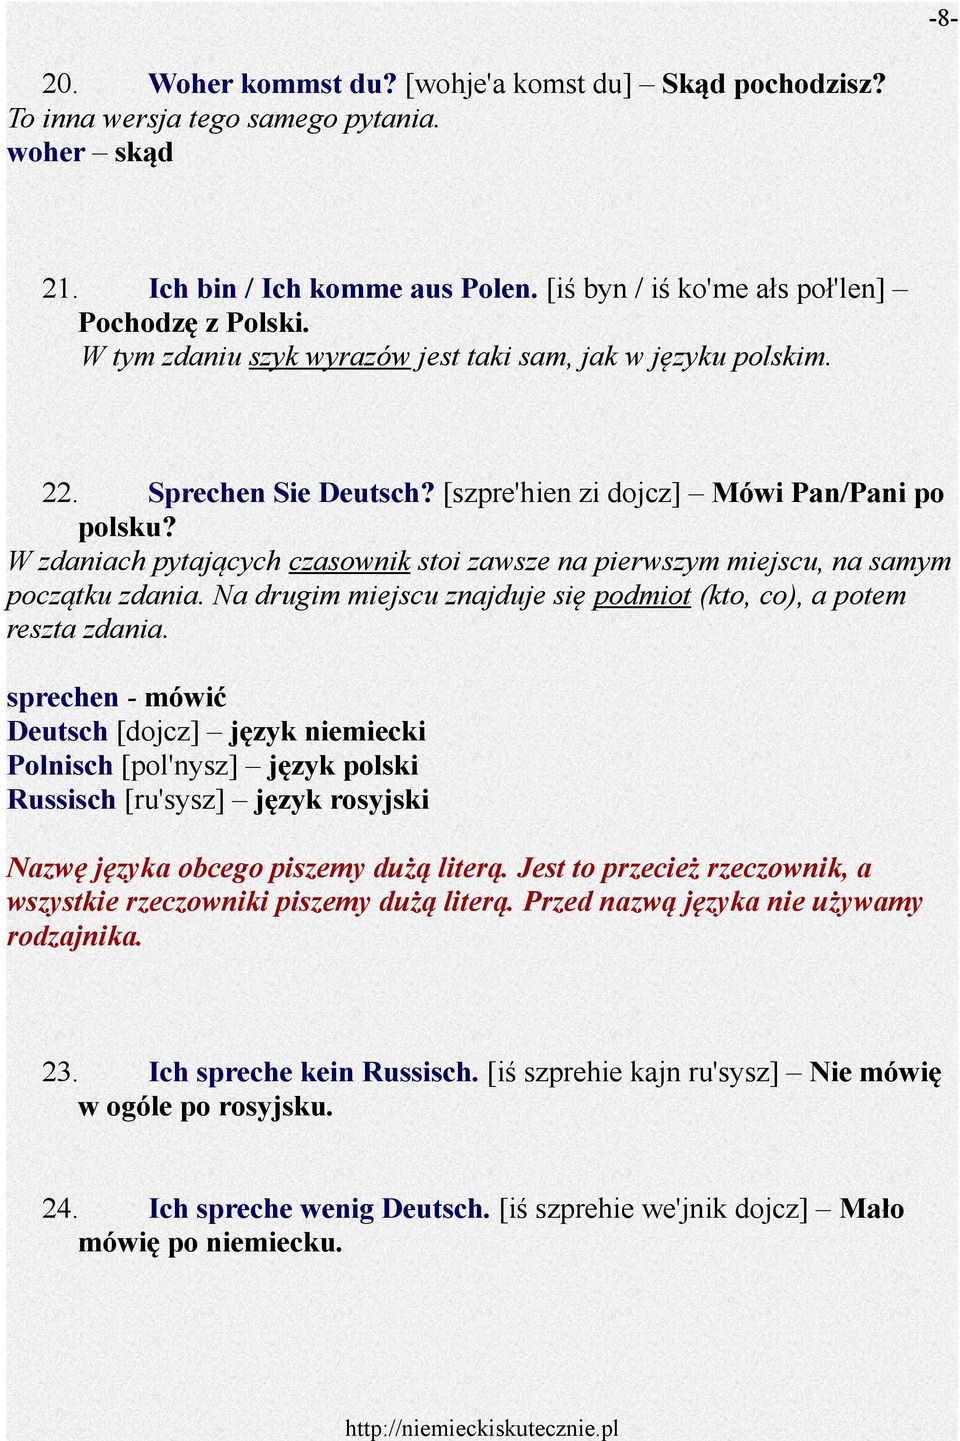 Kennenlernen po polsku